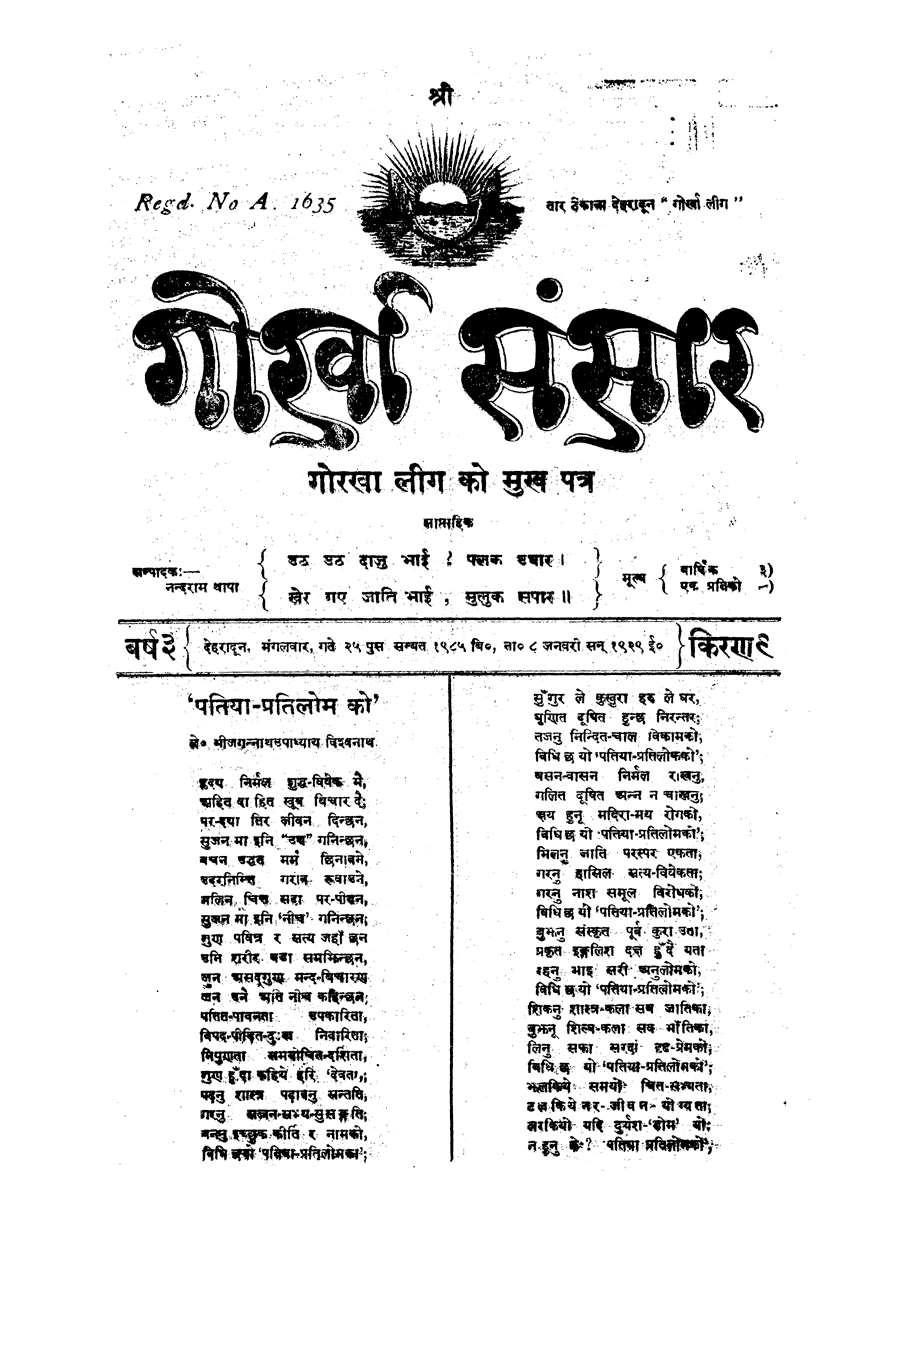 Gorkha Sansar, 8 Jan 1929, page 1